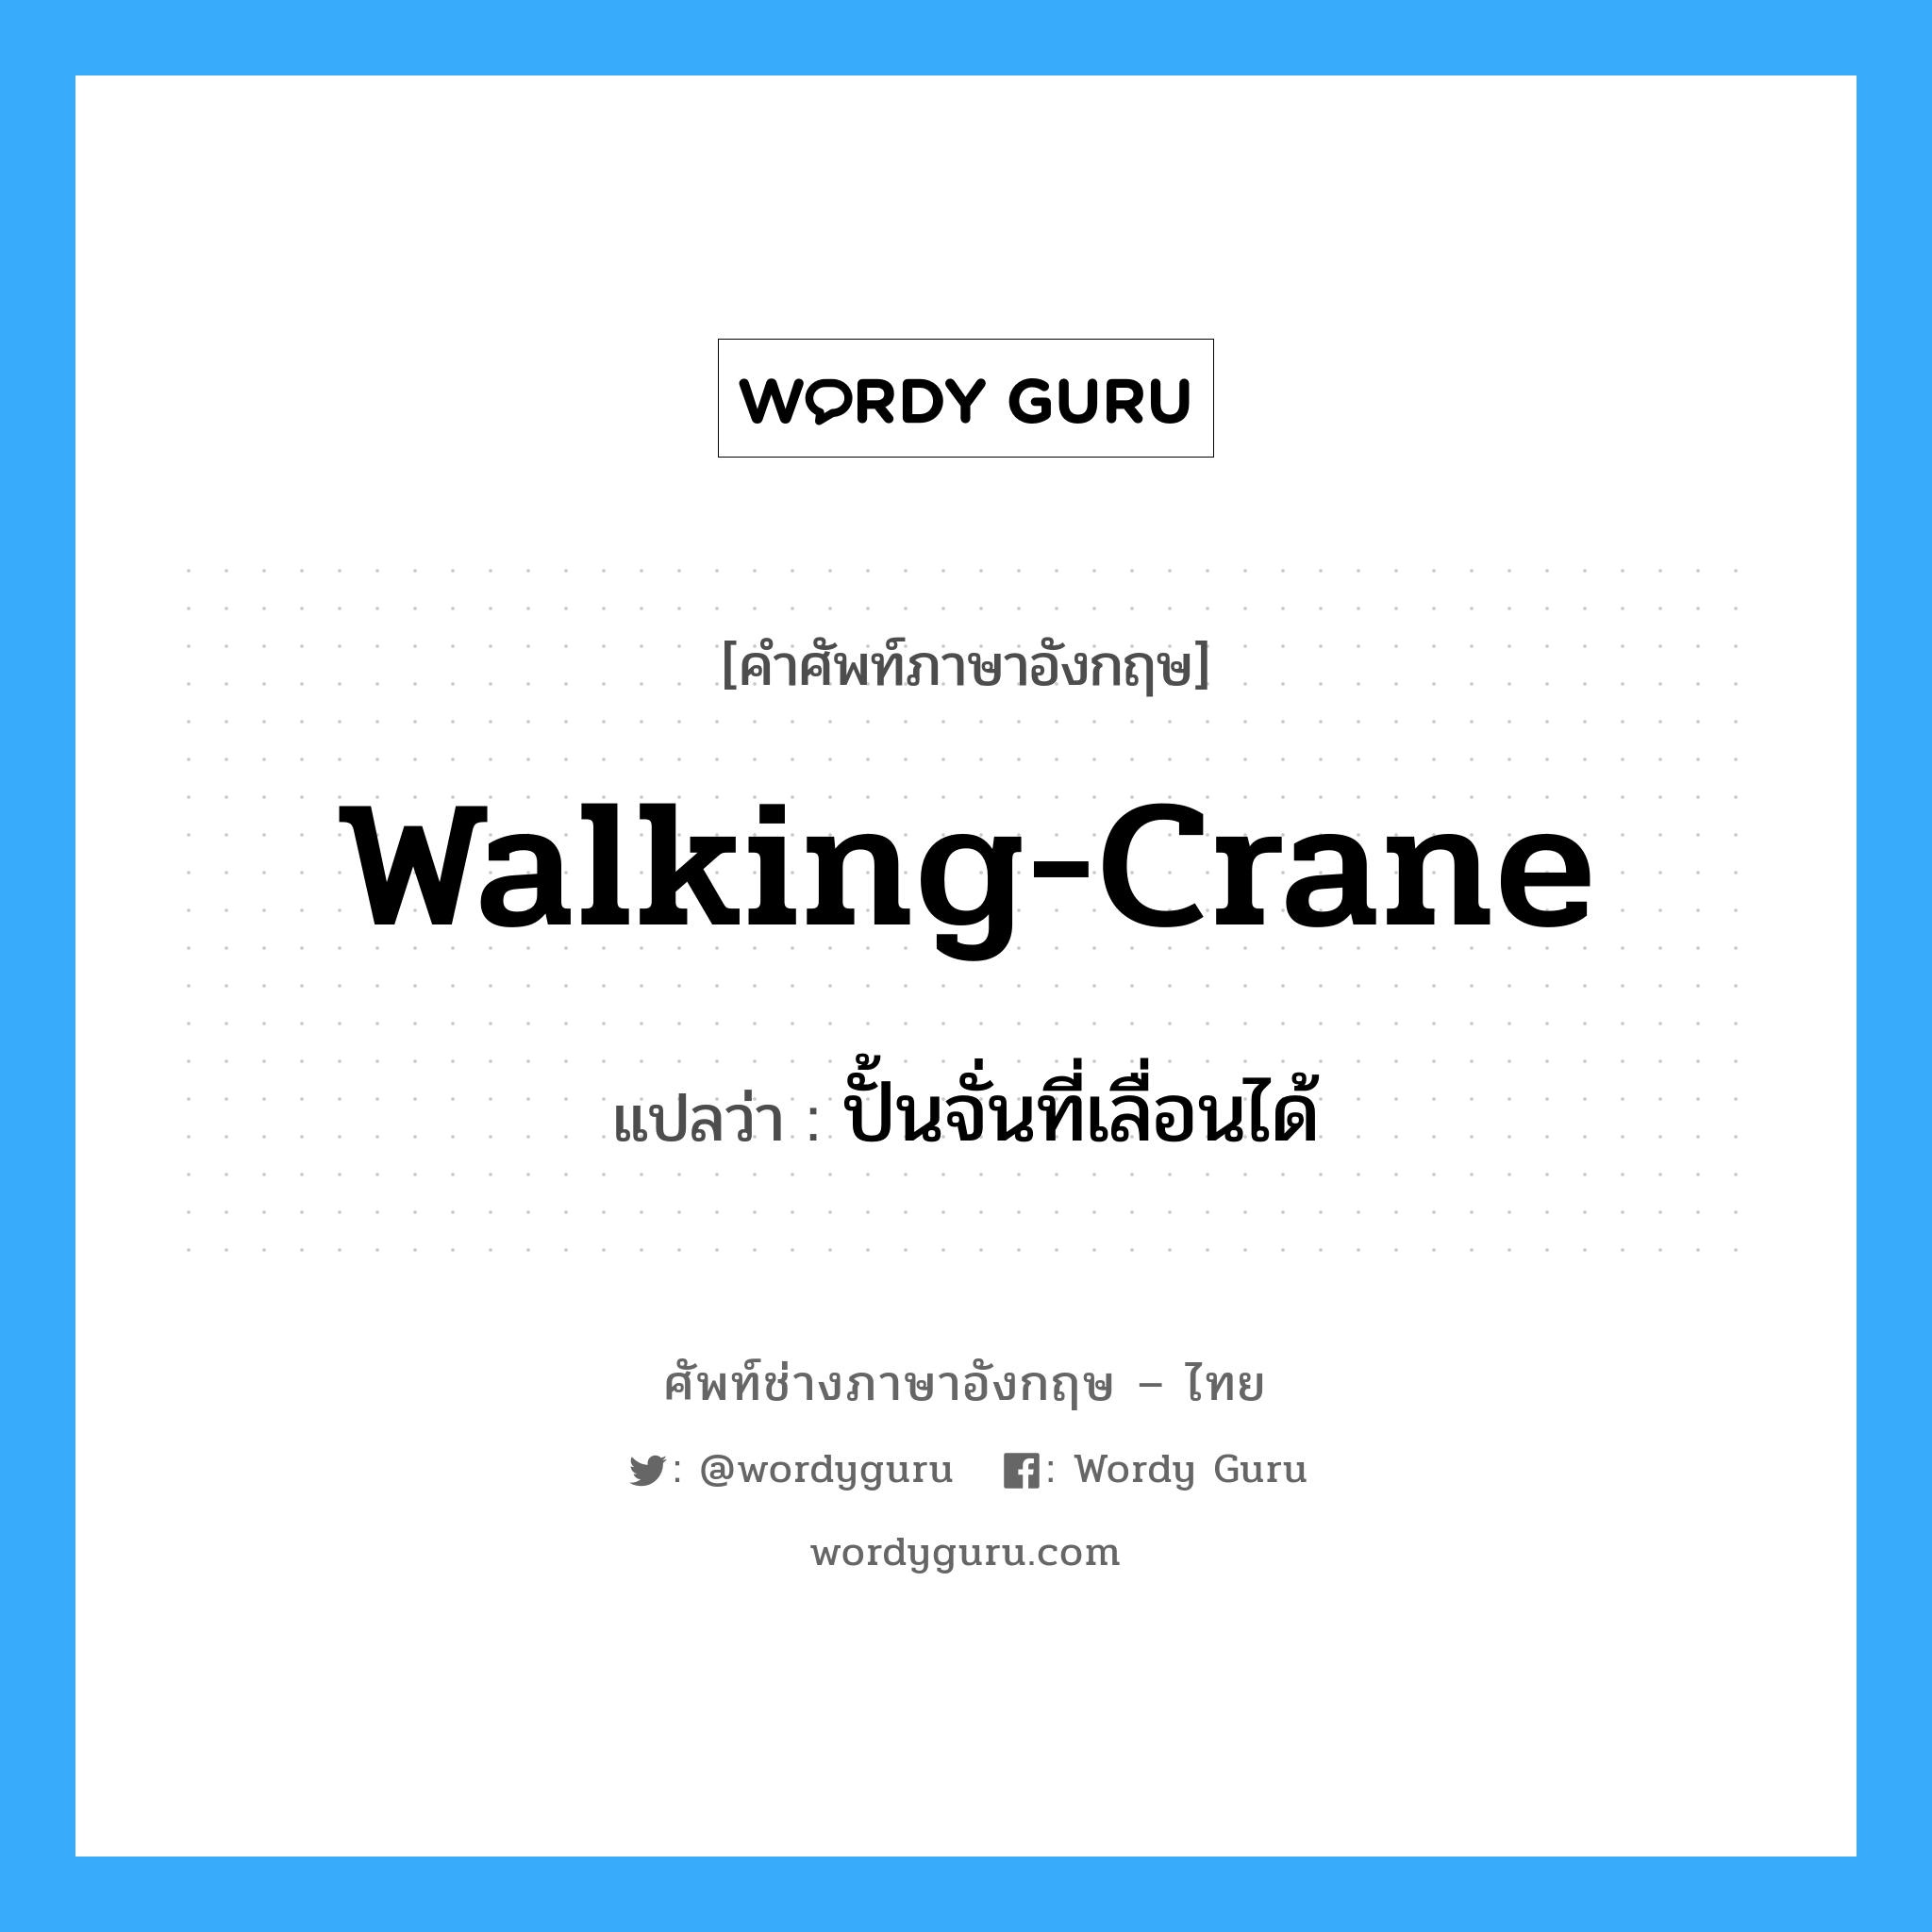 ปั้นจั่นที่เลื่อนได้ ภาษาอังกฤษ?, คำศัพท์ช่างภาษาอังกฤษ - ไทย ปั้นจั่นที่เลื่อนได้ คำศัพท์ภาษาอังกฤษ ปั้นจั่นที่เลื่อนได้ แปลว่า walking-crane